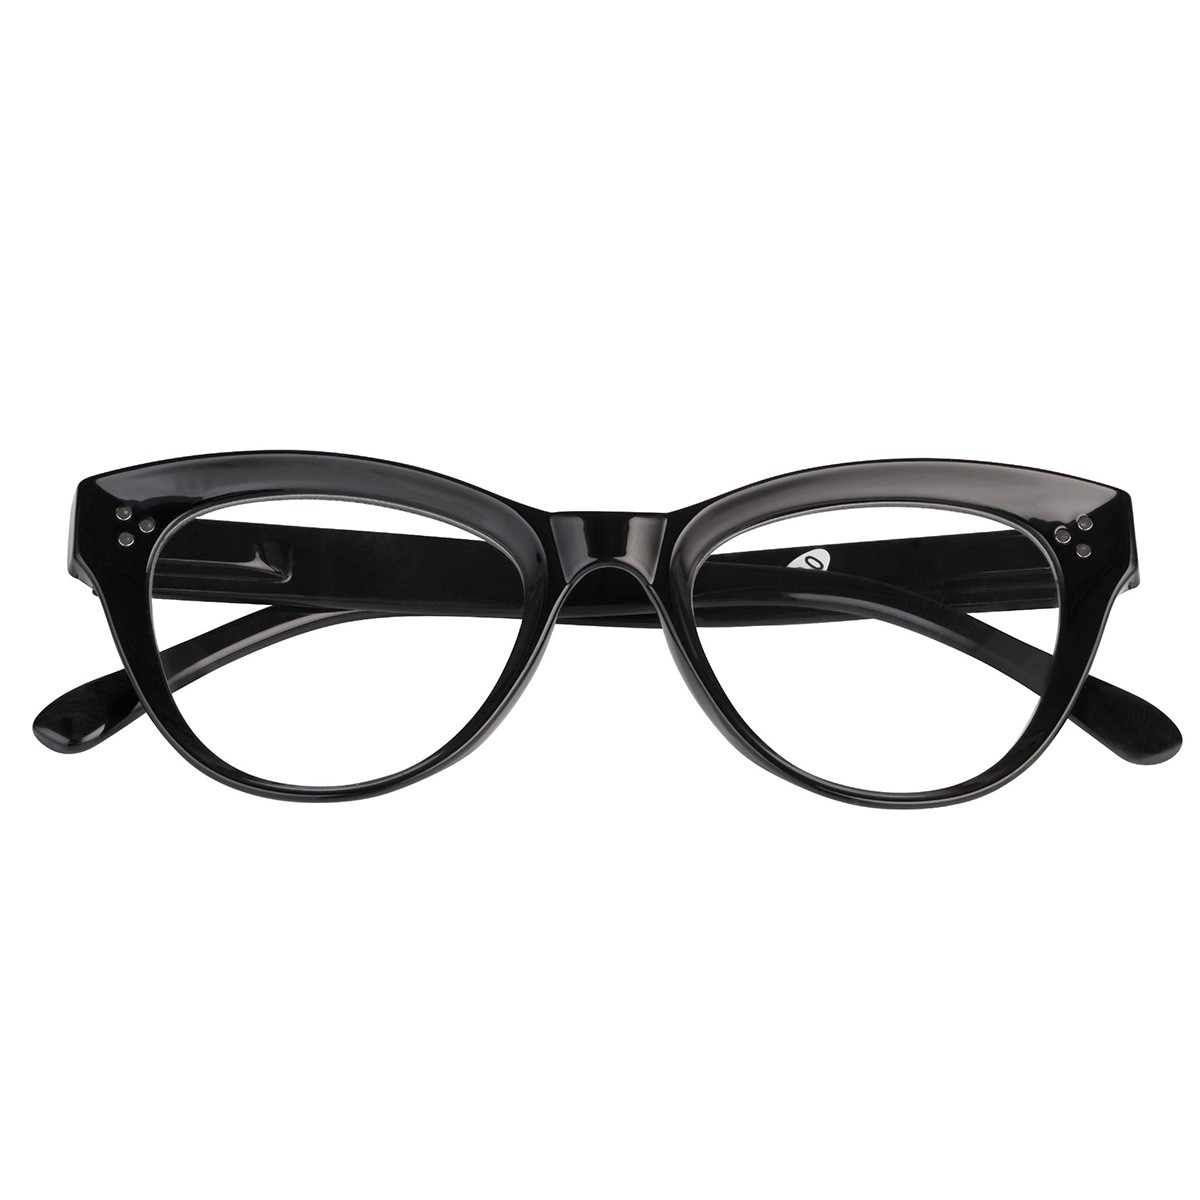 Iaview gafa de presbicia EMILY negra +1,50